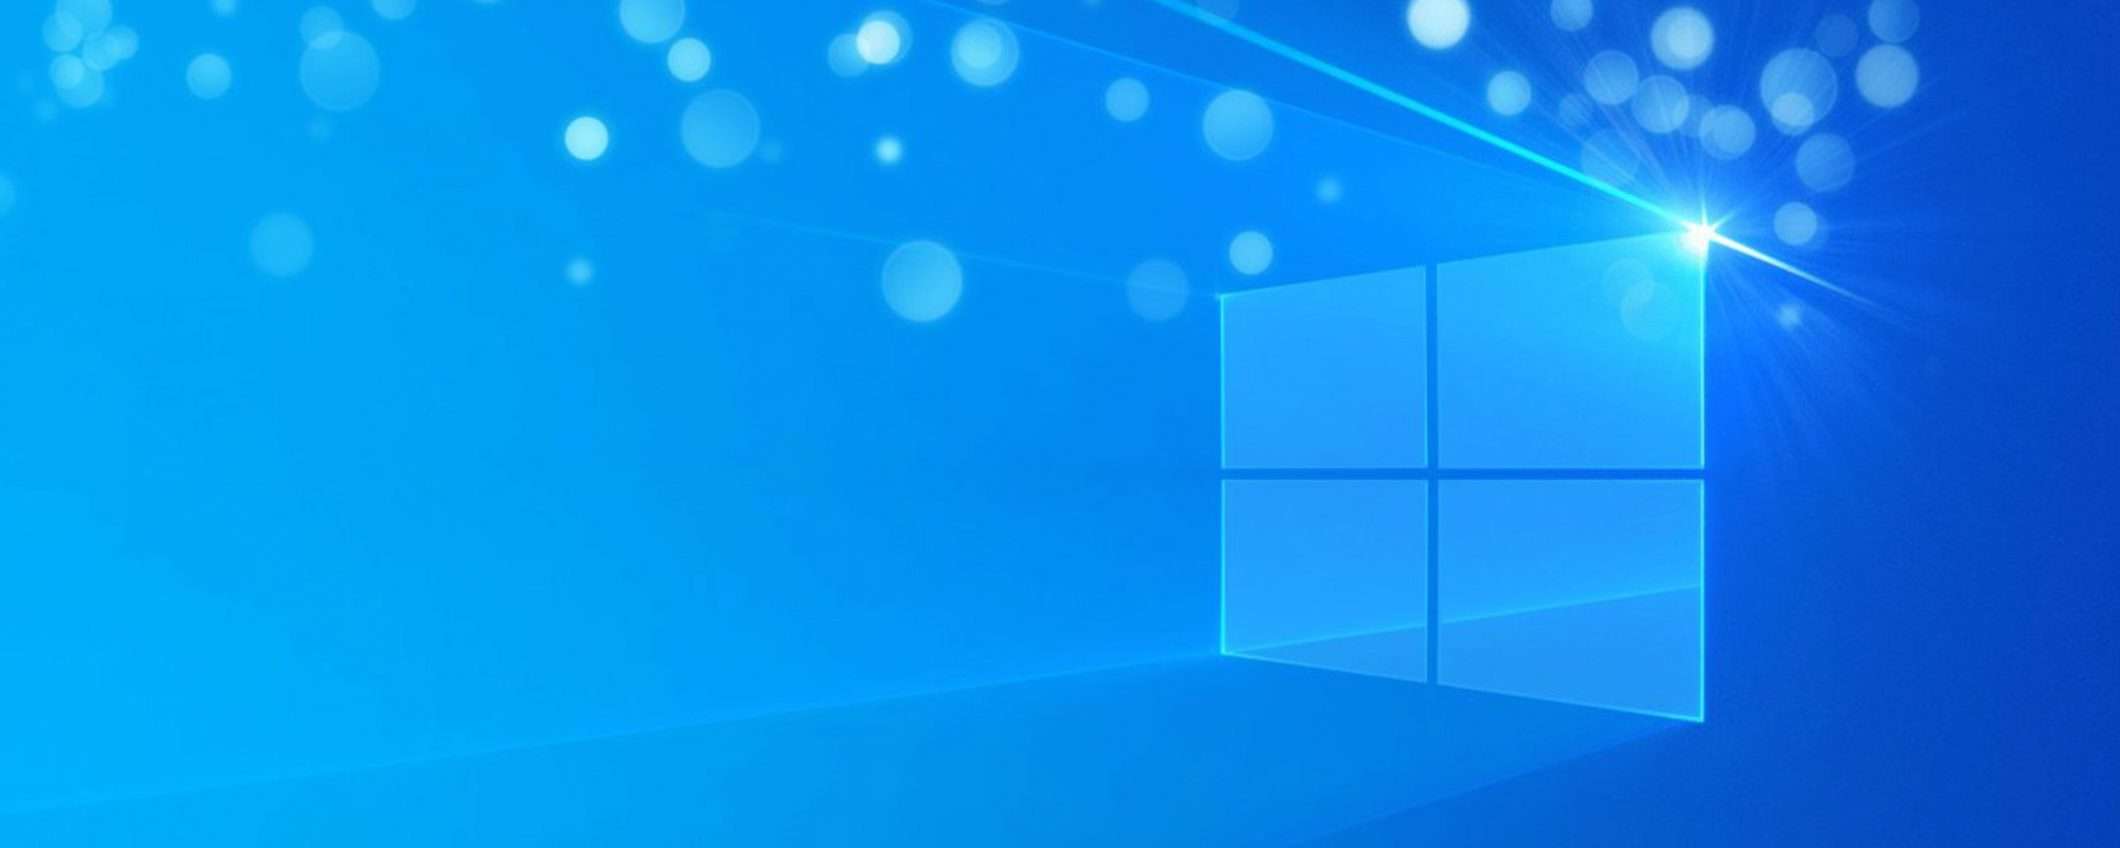 Windows 10 licenza genuina a vita €10, supersconto del 91%!